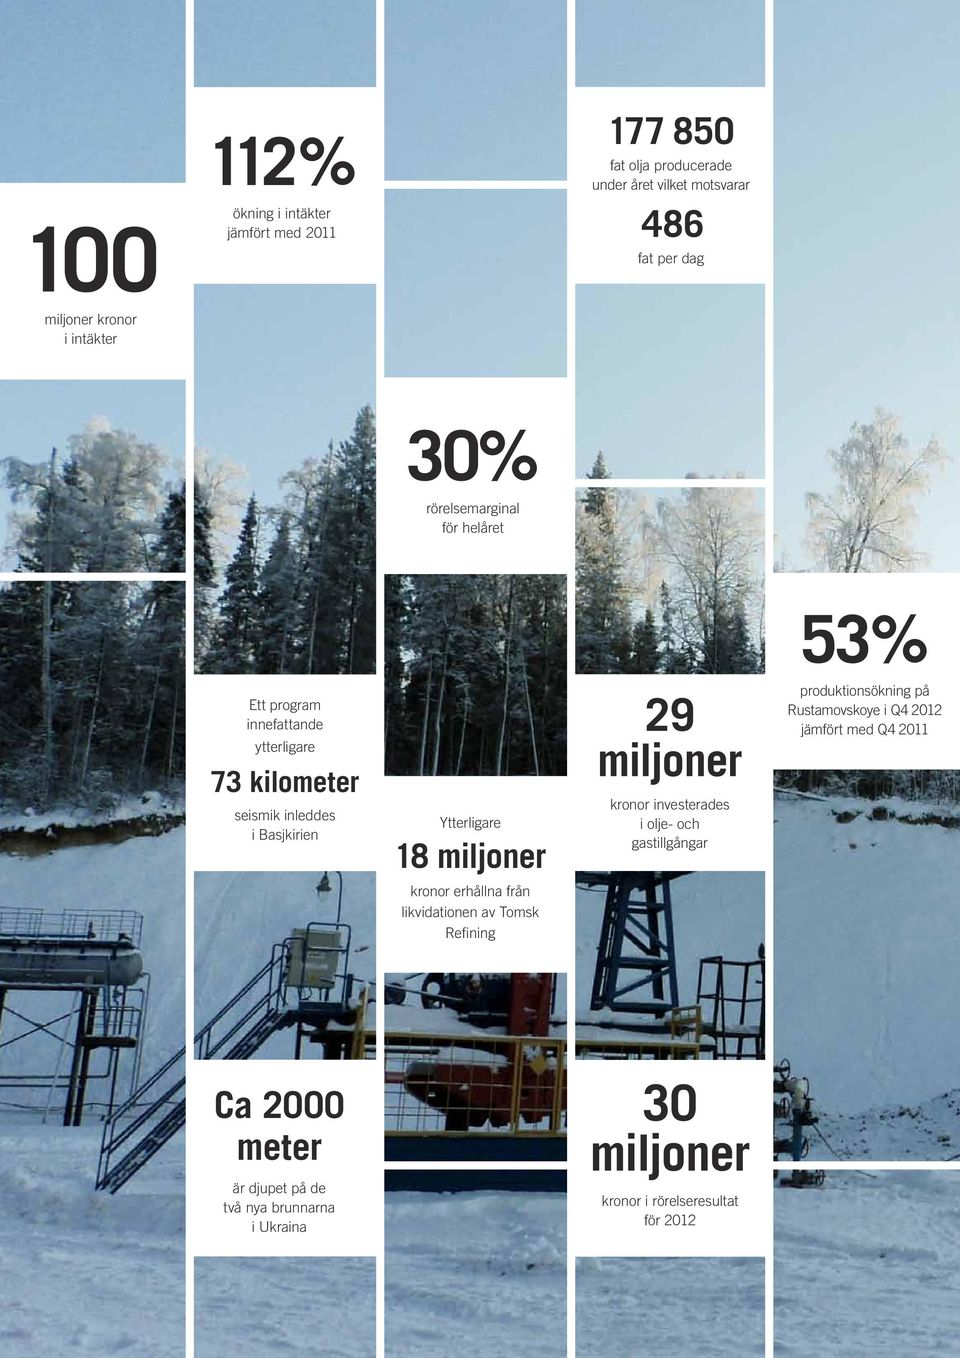 miljoner 29 miljoner kronor investerades i olje- och gastillgångar produktionsökning på Rustamovskoye i Q4 2012 jämfört med Q4 2011 kronor